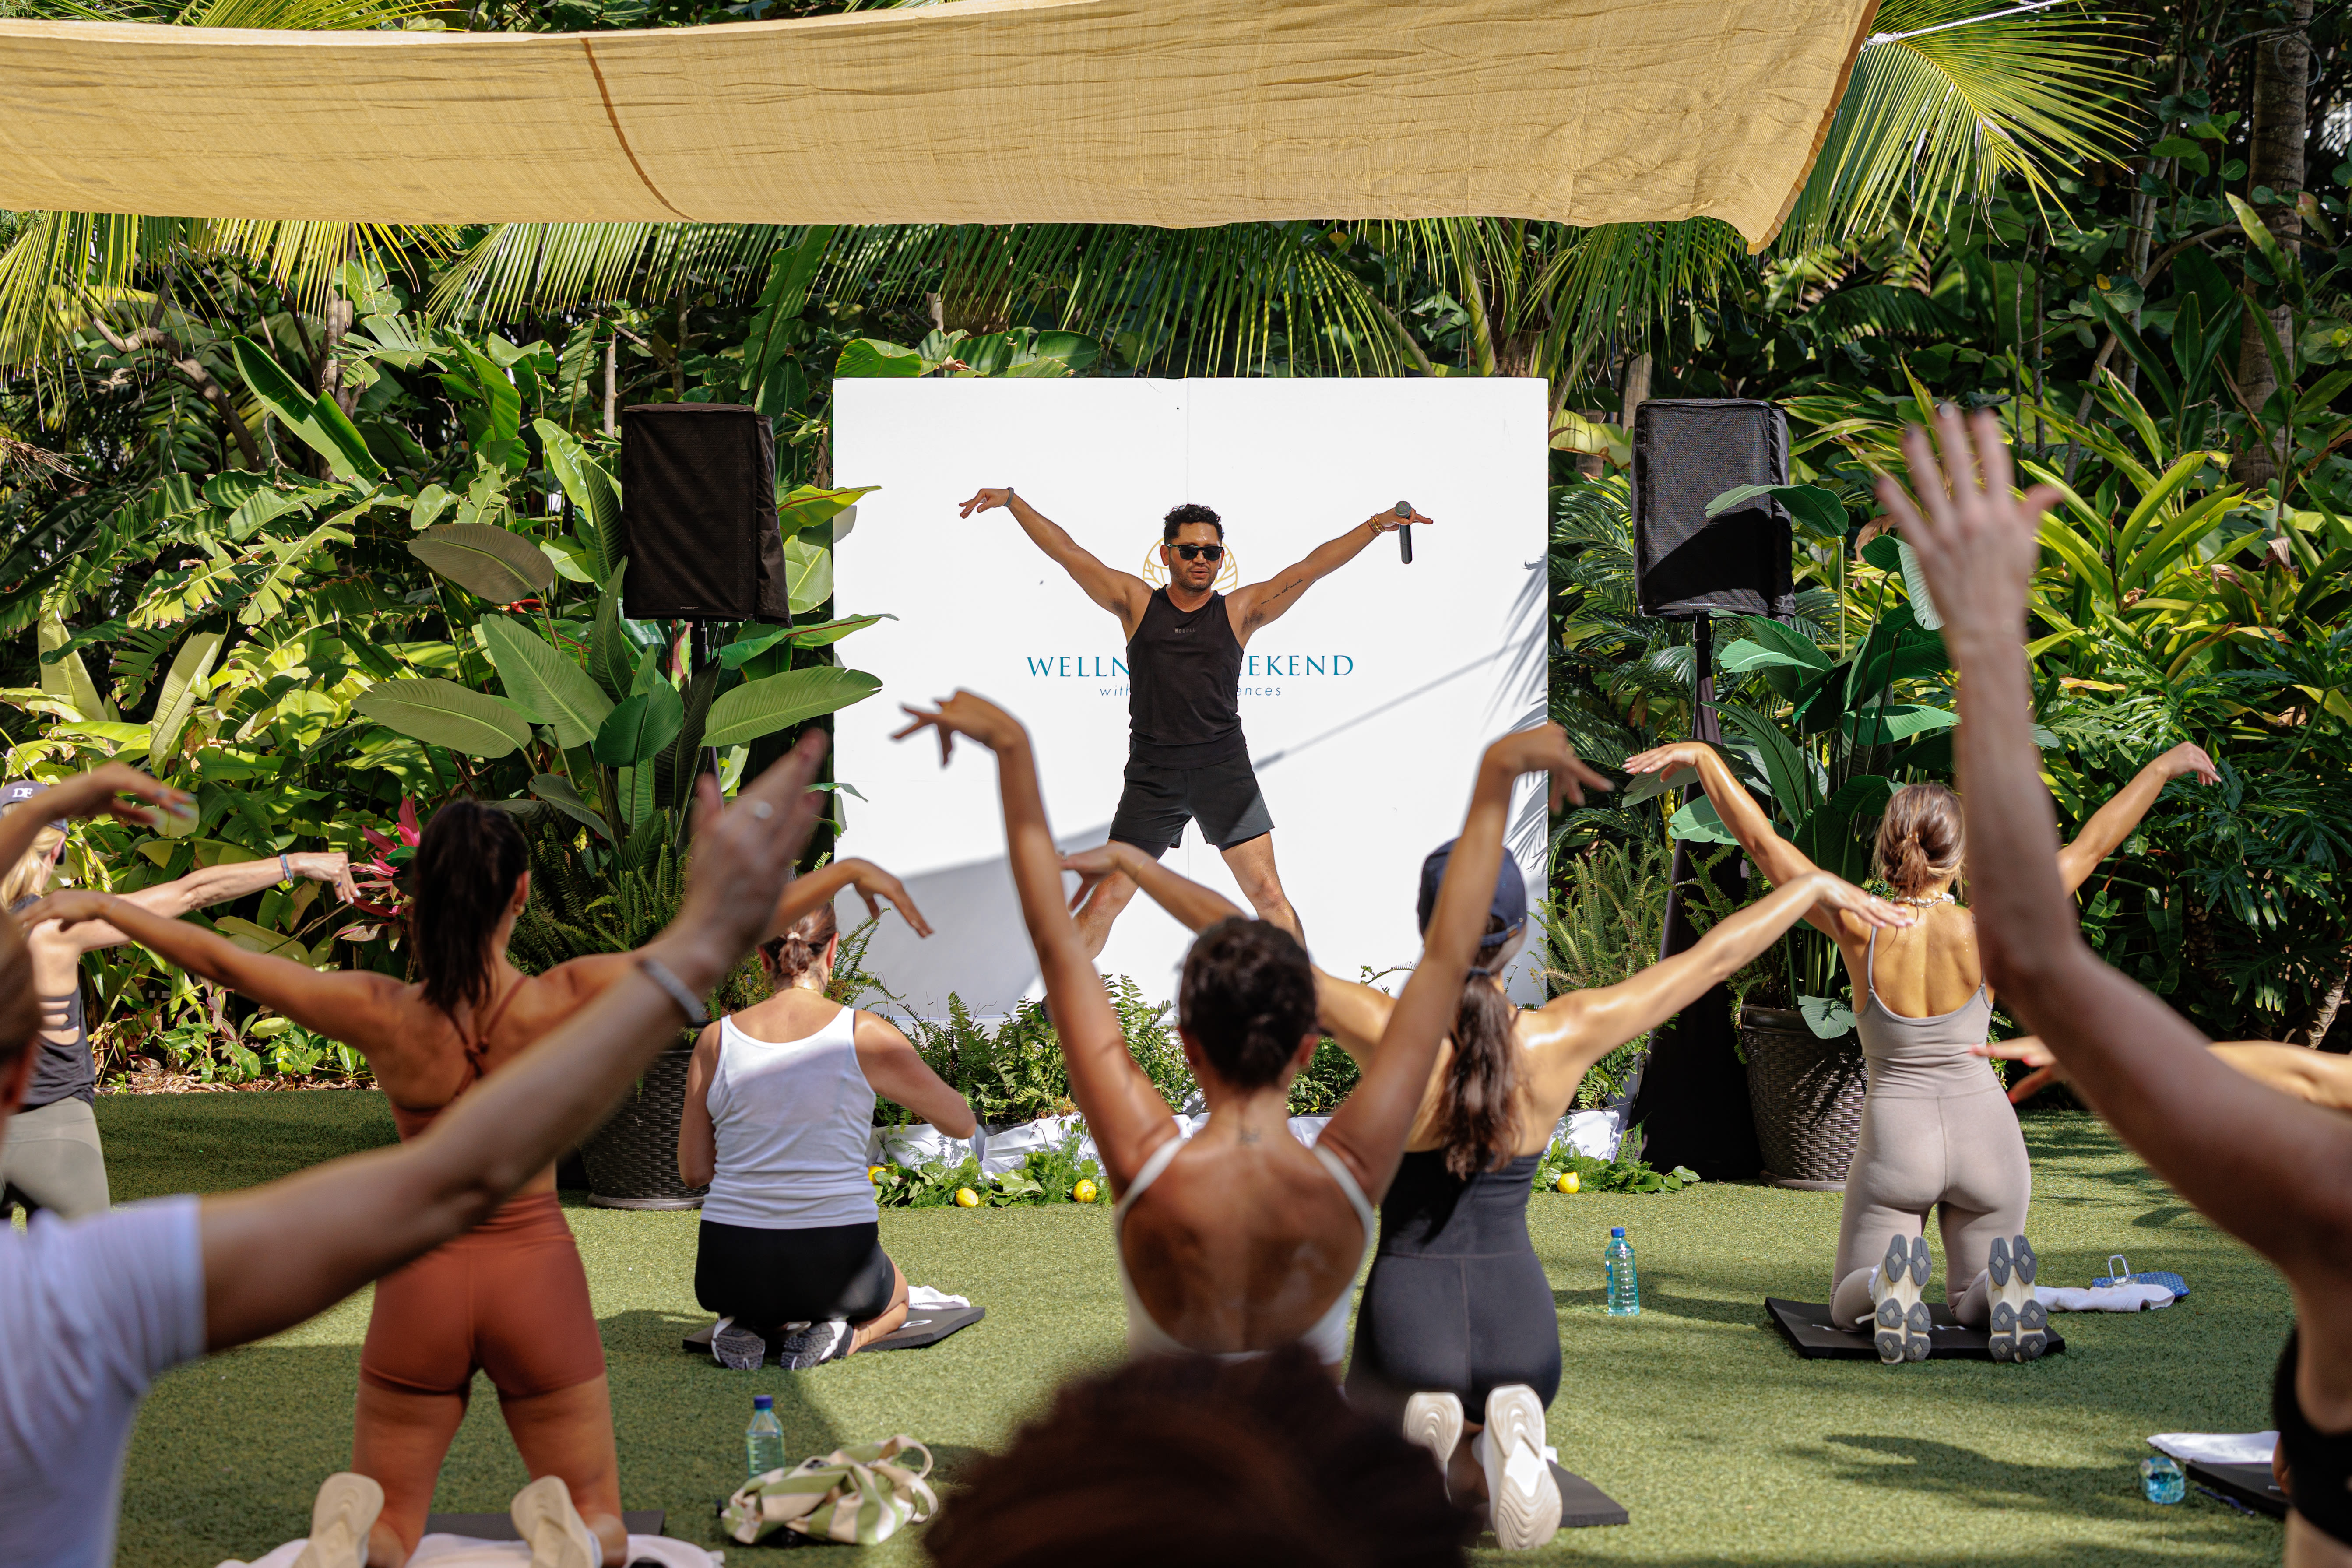 Gwyneth Paltrow’s Goop Debuts Baha Mar Wellness Weekend in Sunny Bahamas